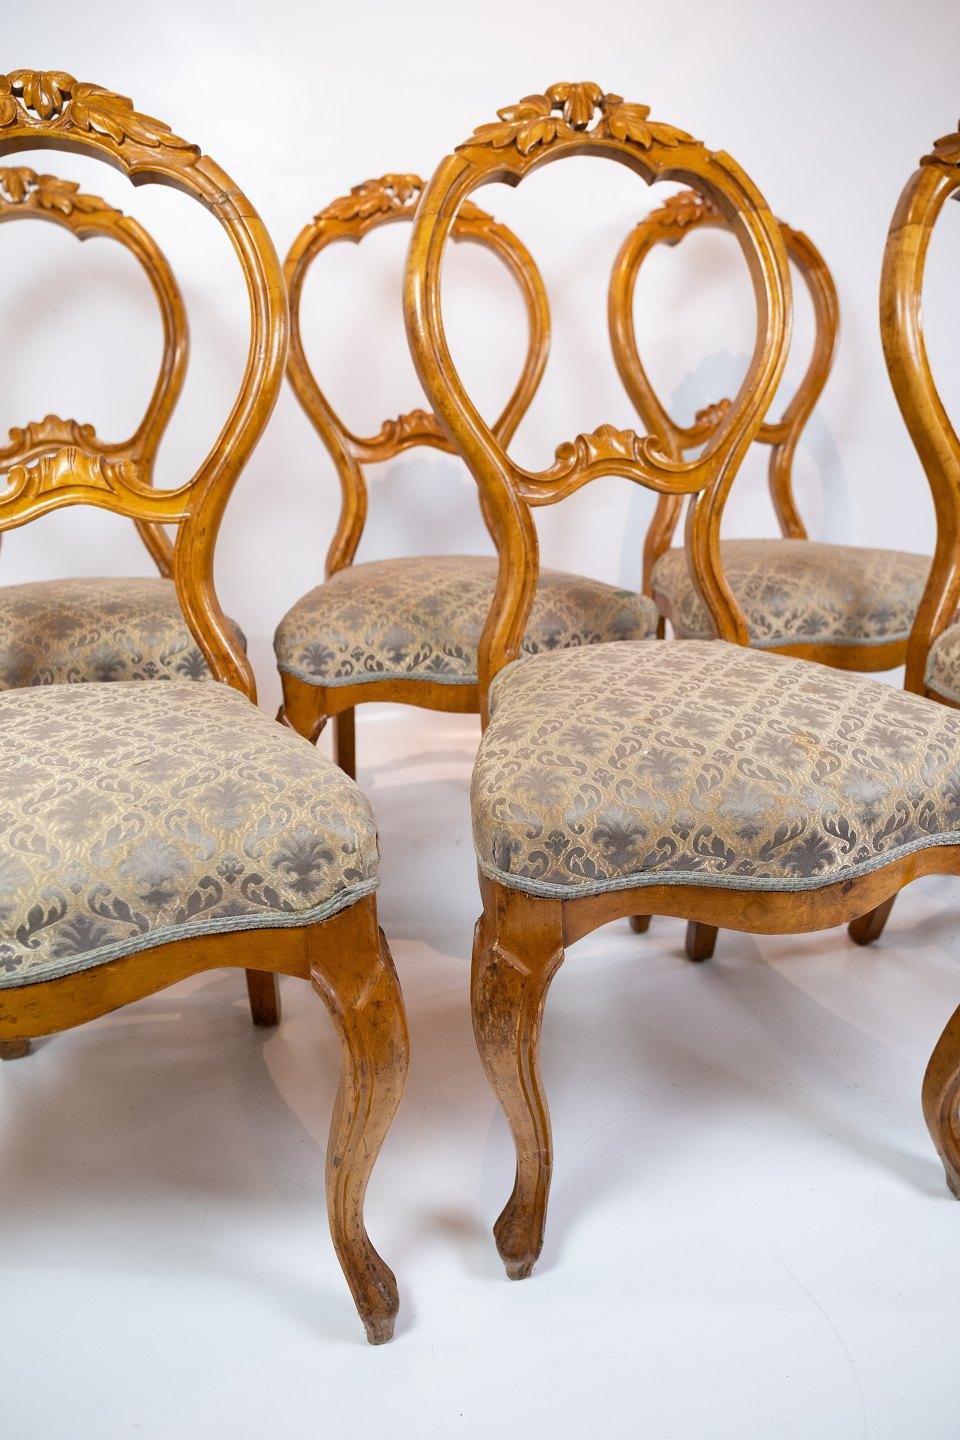 L'ensemble de six chaises de salle à manger rococo, fabriquées en acajou clair et ornées d'un tissu aux motifs complexes, rappelle l'opulence et l'élégance des années 1760. Ces chaises sont d'excellents exemples du style rococo, caractérisé par une